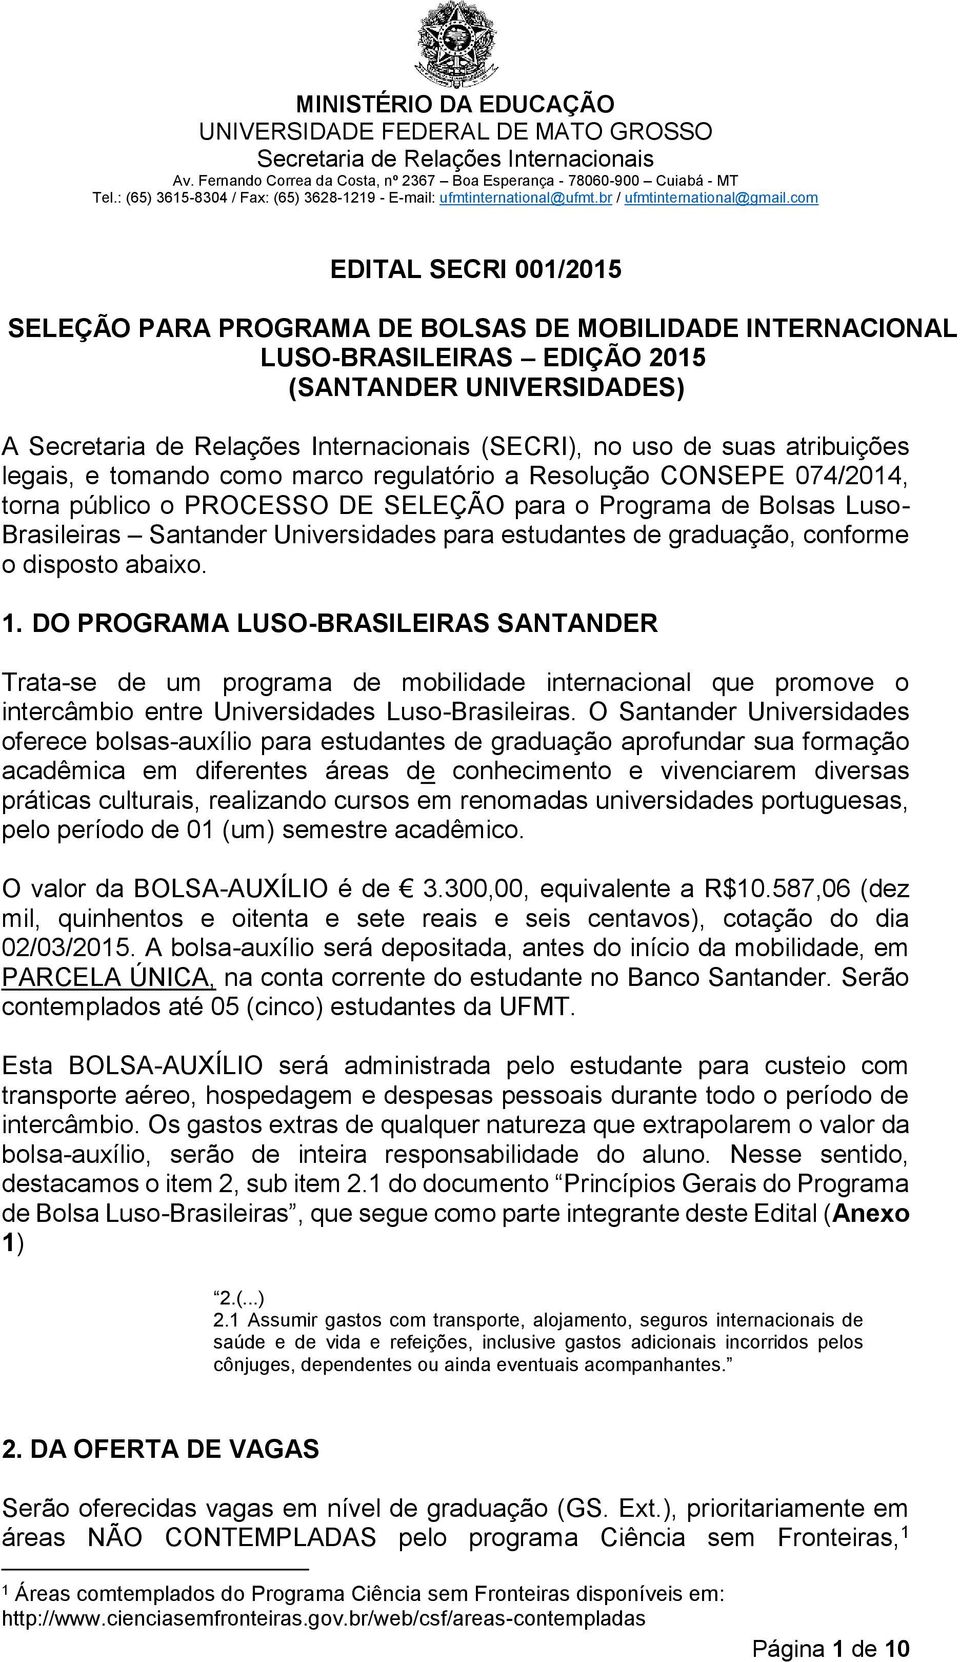 disposto abaixo. 1. DO PROGRAMA LUSO-BRASILEIRAS SANTANDER Trata-se de um programa de mobilidade internacional que promove o intercâmbio entre Universidades Luso-Brasileiras.